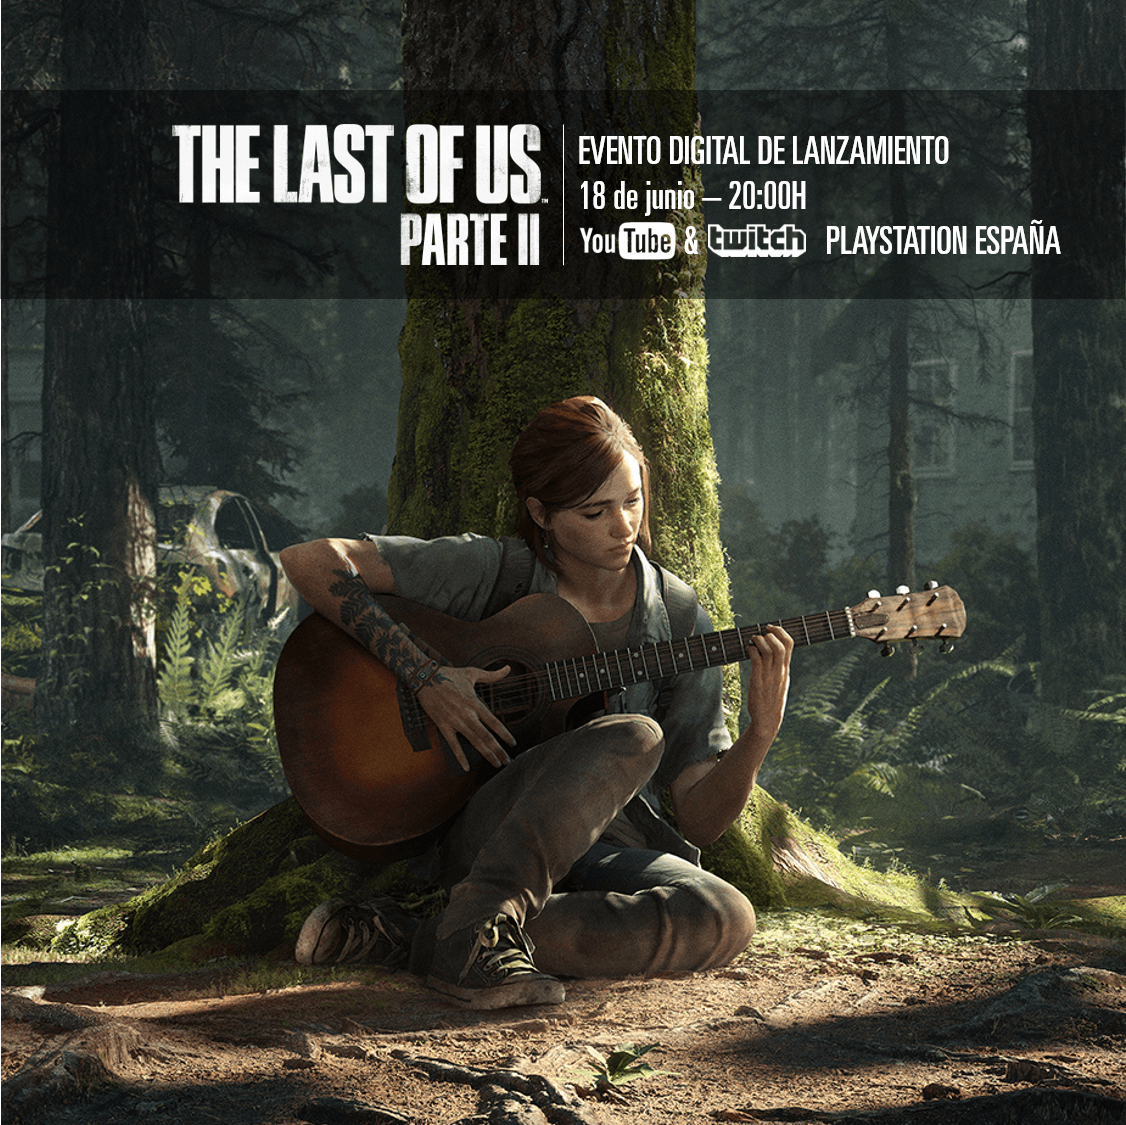 The Last of Us Parte II presentación en España el jueves 18 a las 20:00 horas #TheLastOfUsParteIIYaEstáAquí